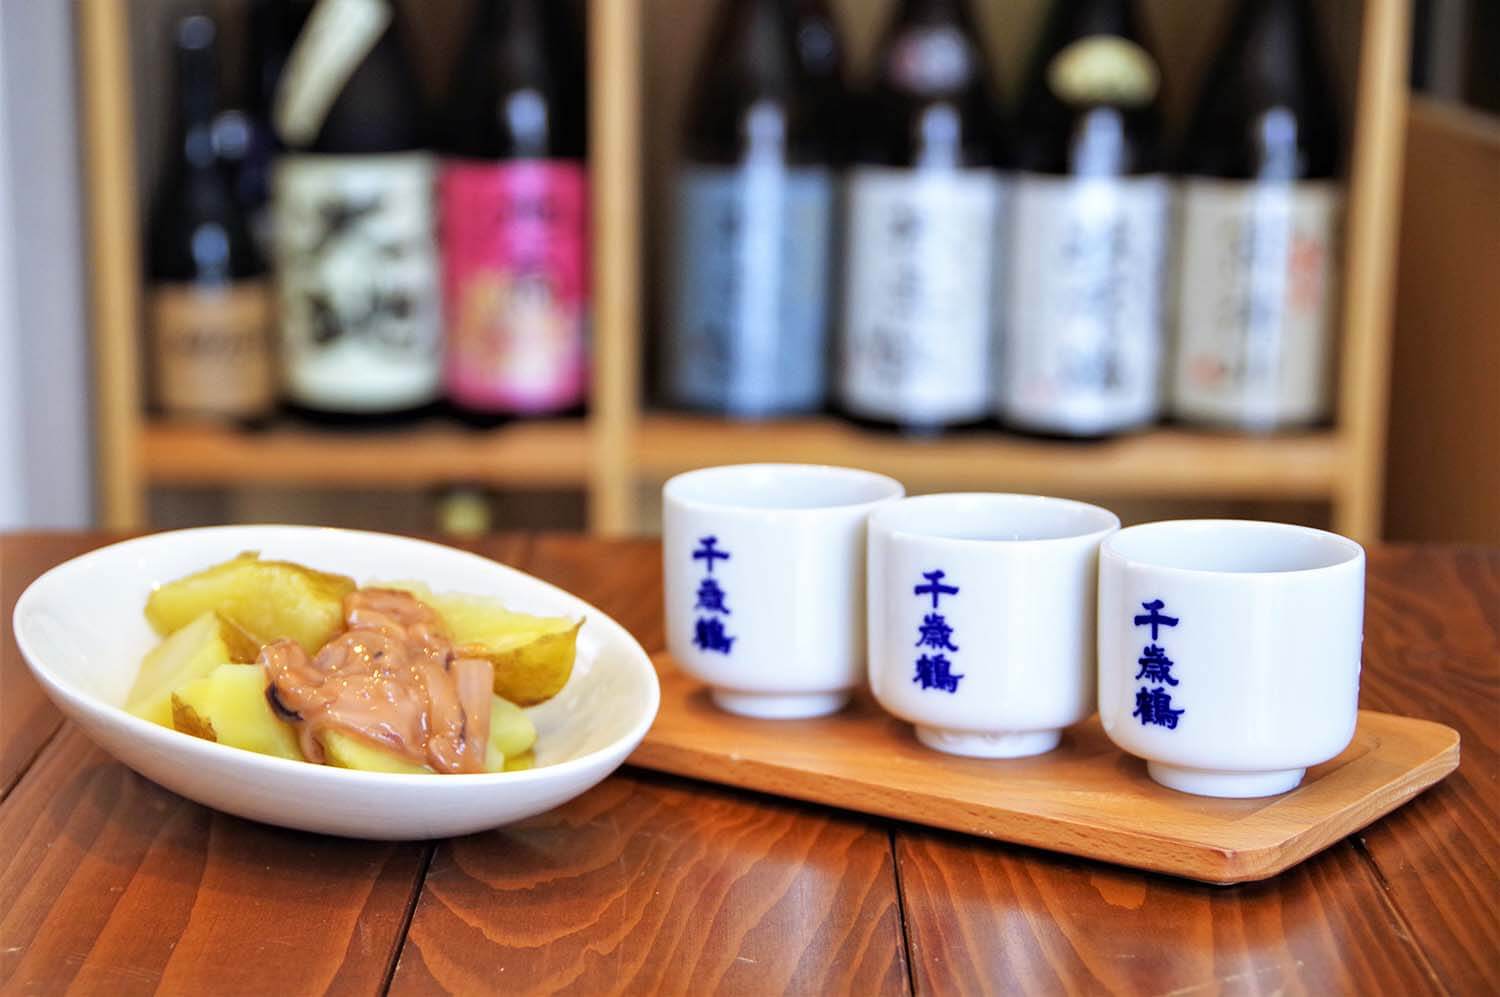 「日本酒3種飲み比べ」600円と「塩辛じゃがバター」550円。角打ちの日本酒は1合300円～